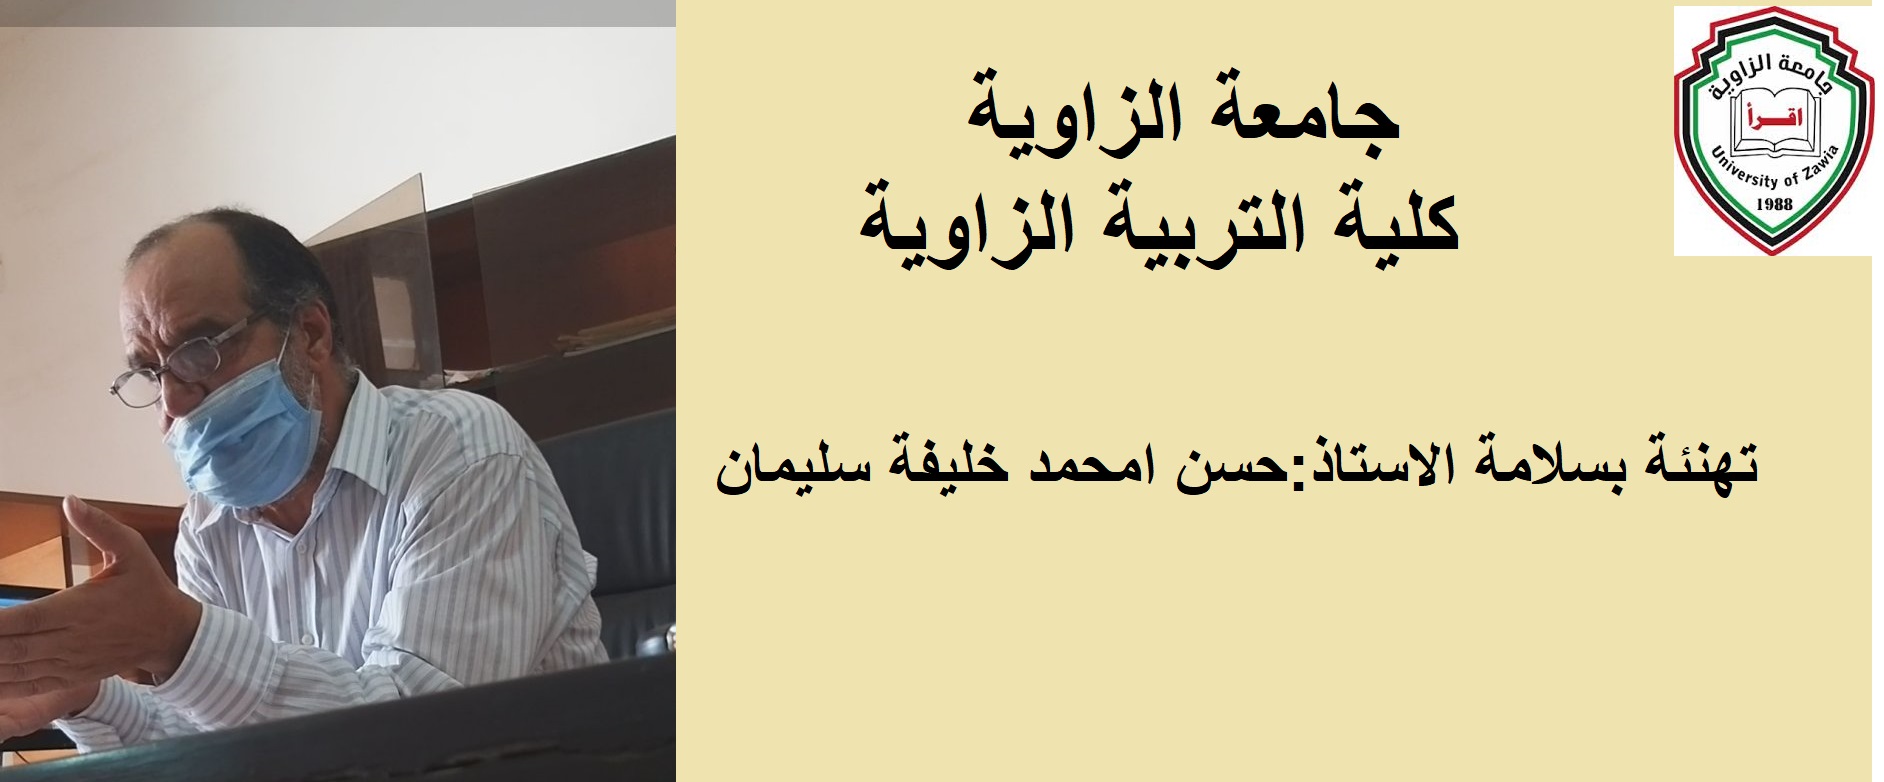 تهنئة بسلامة الاستاذ: حسن امحمد خليفة سليمان عضو هيئة التدريس بكلية التربية الزاوية